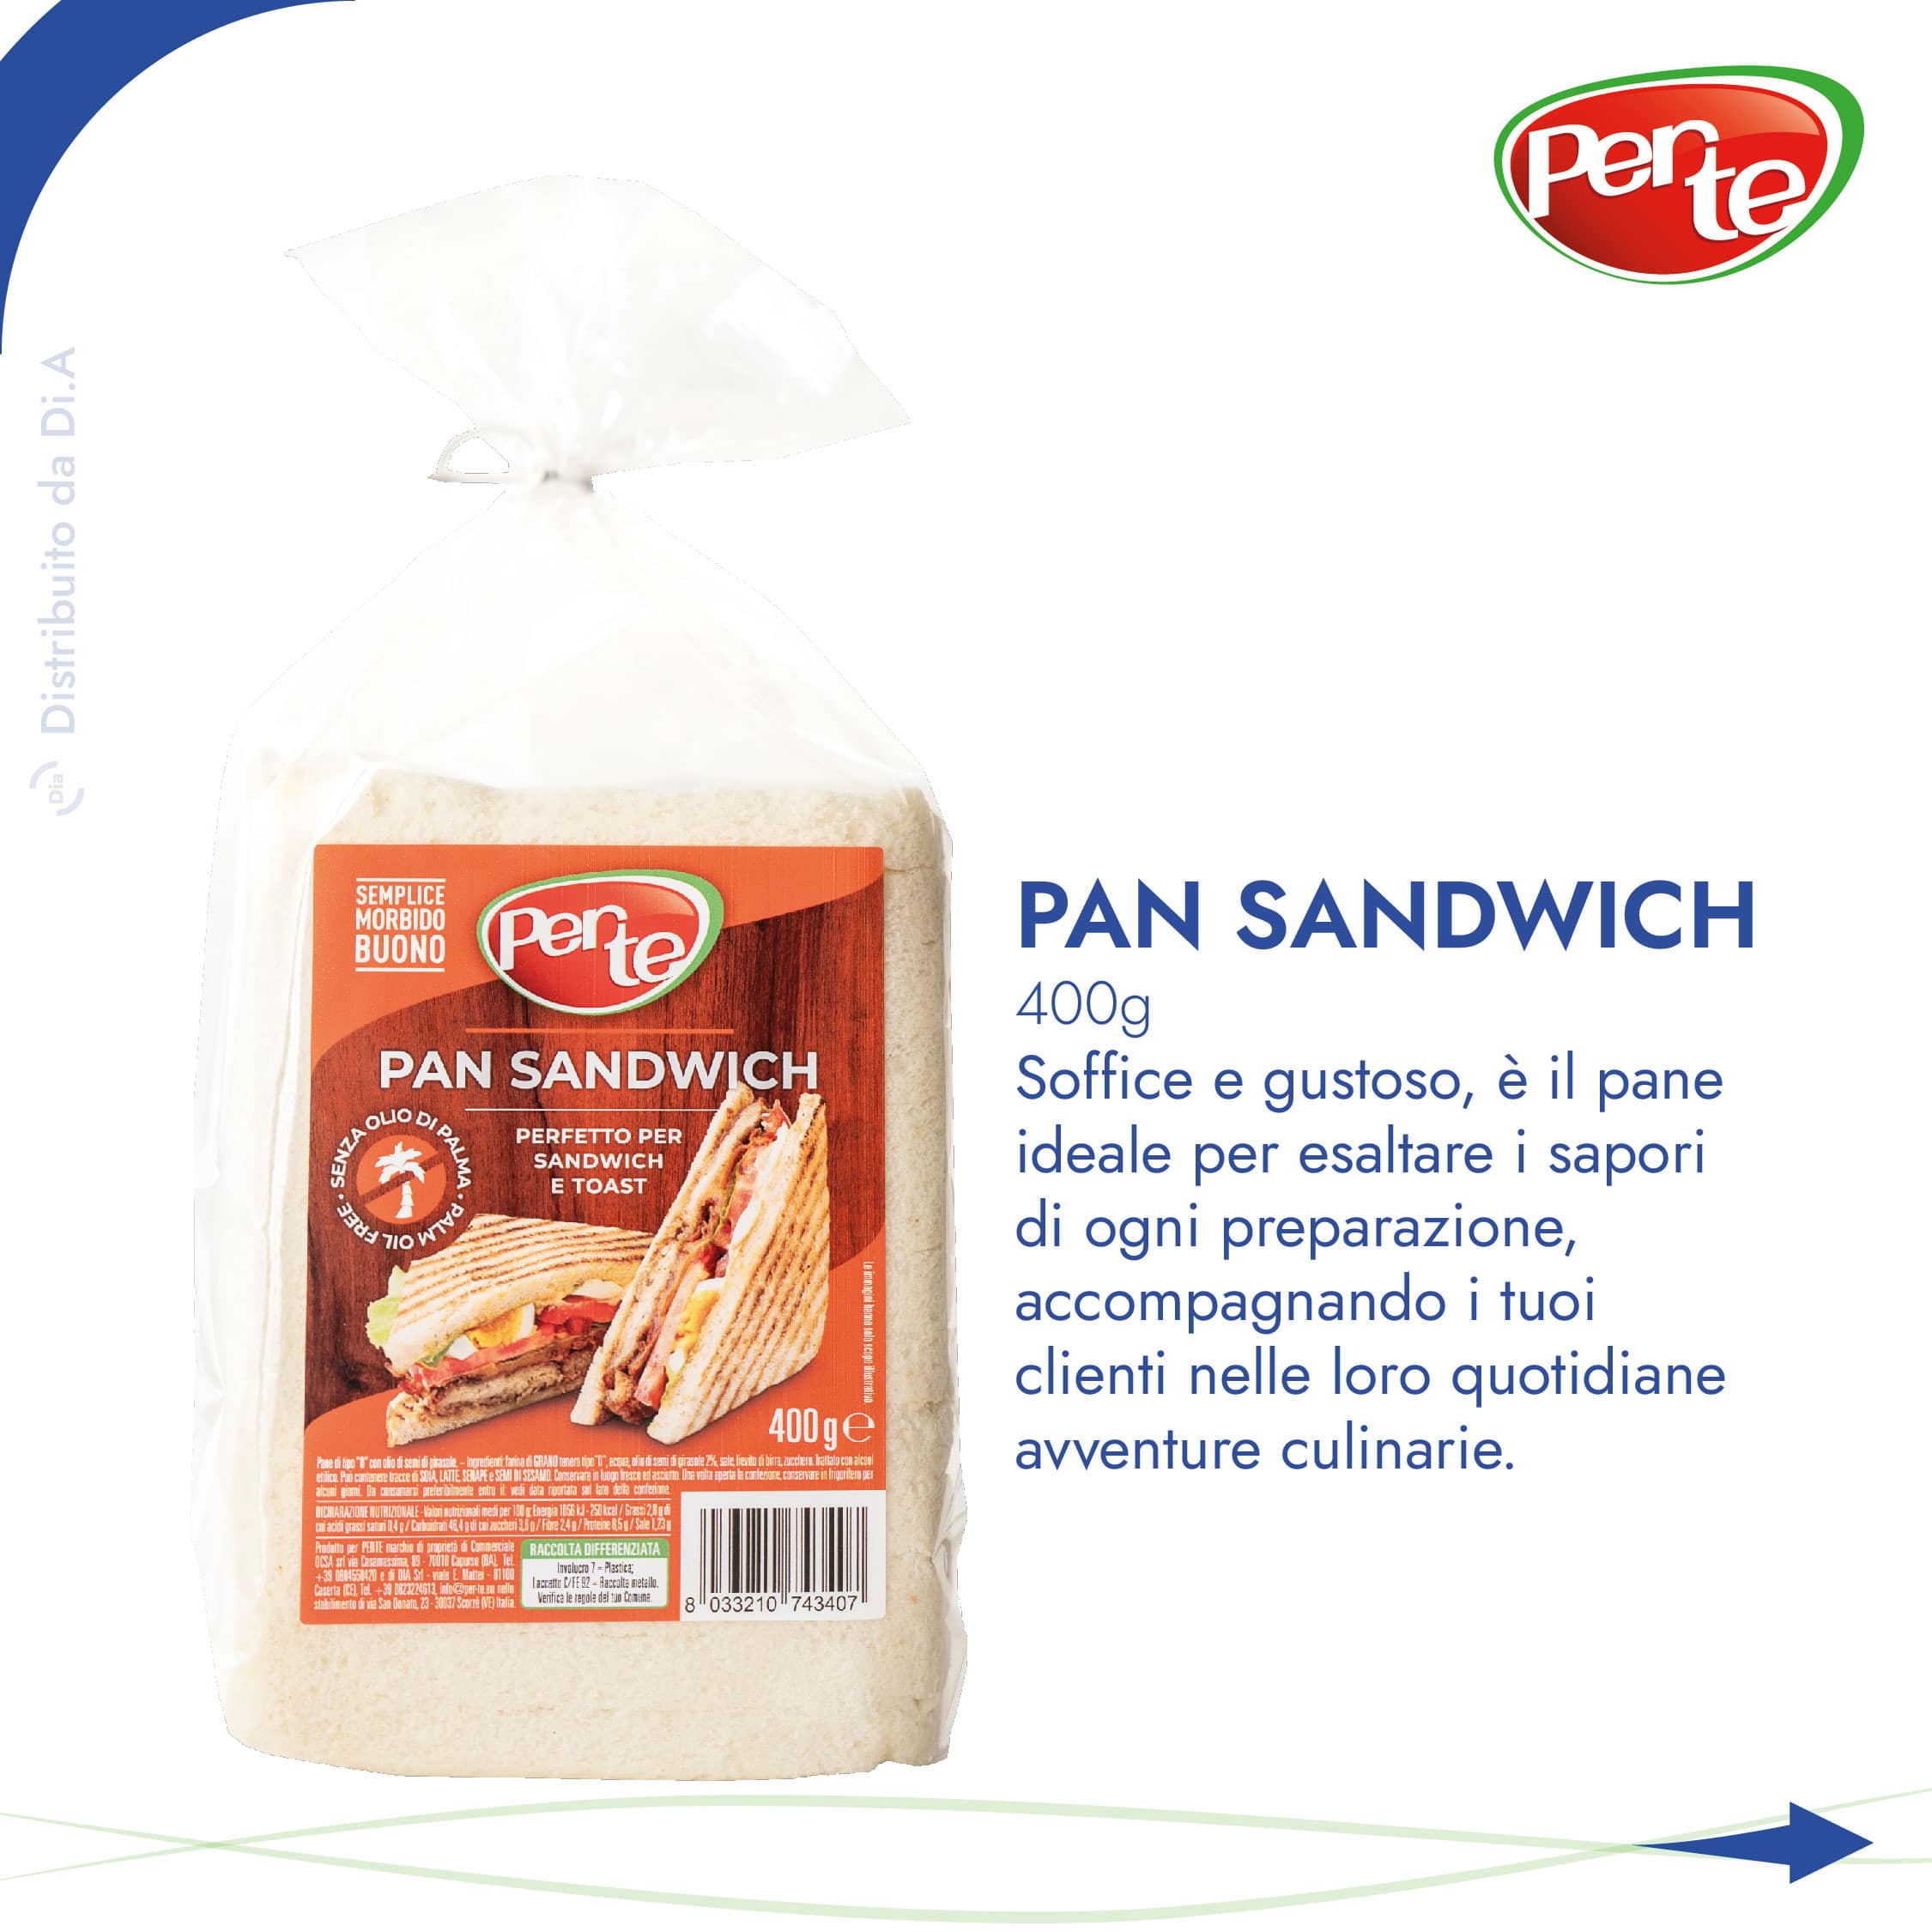 Pan Sandwich 400g: Soffice e gustoso, e il pane ideale per esaltare i sapori di ogni preparazione, accompagnando i tuoi clienti nelle loro quotidiane avventure culinarie.